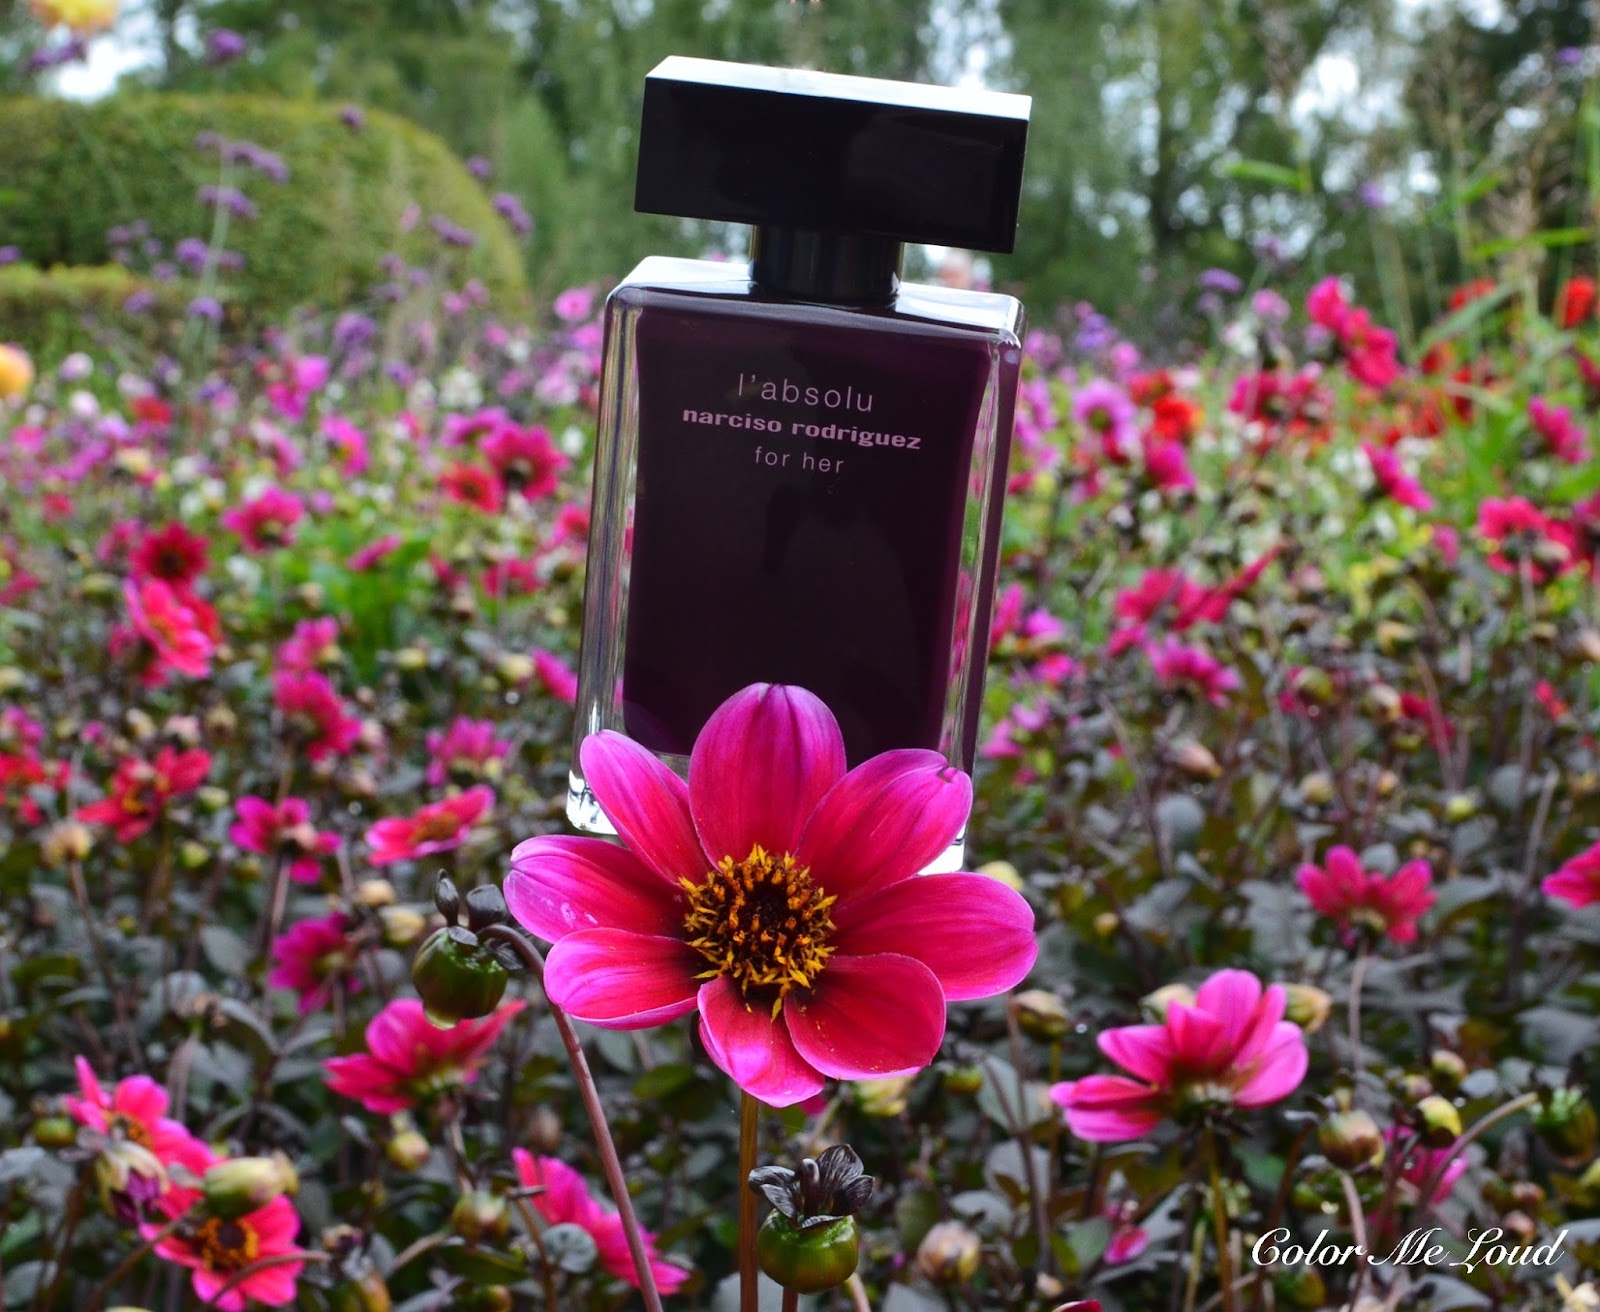 Narciso Rodriguez L\'Absolu For Her Eau de Parfum, Review | Color Me Loud